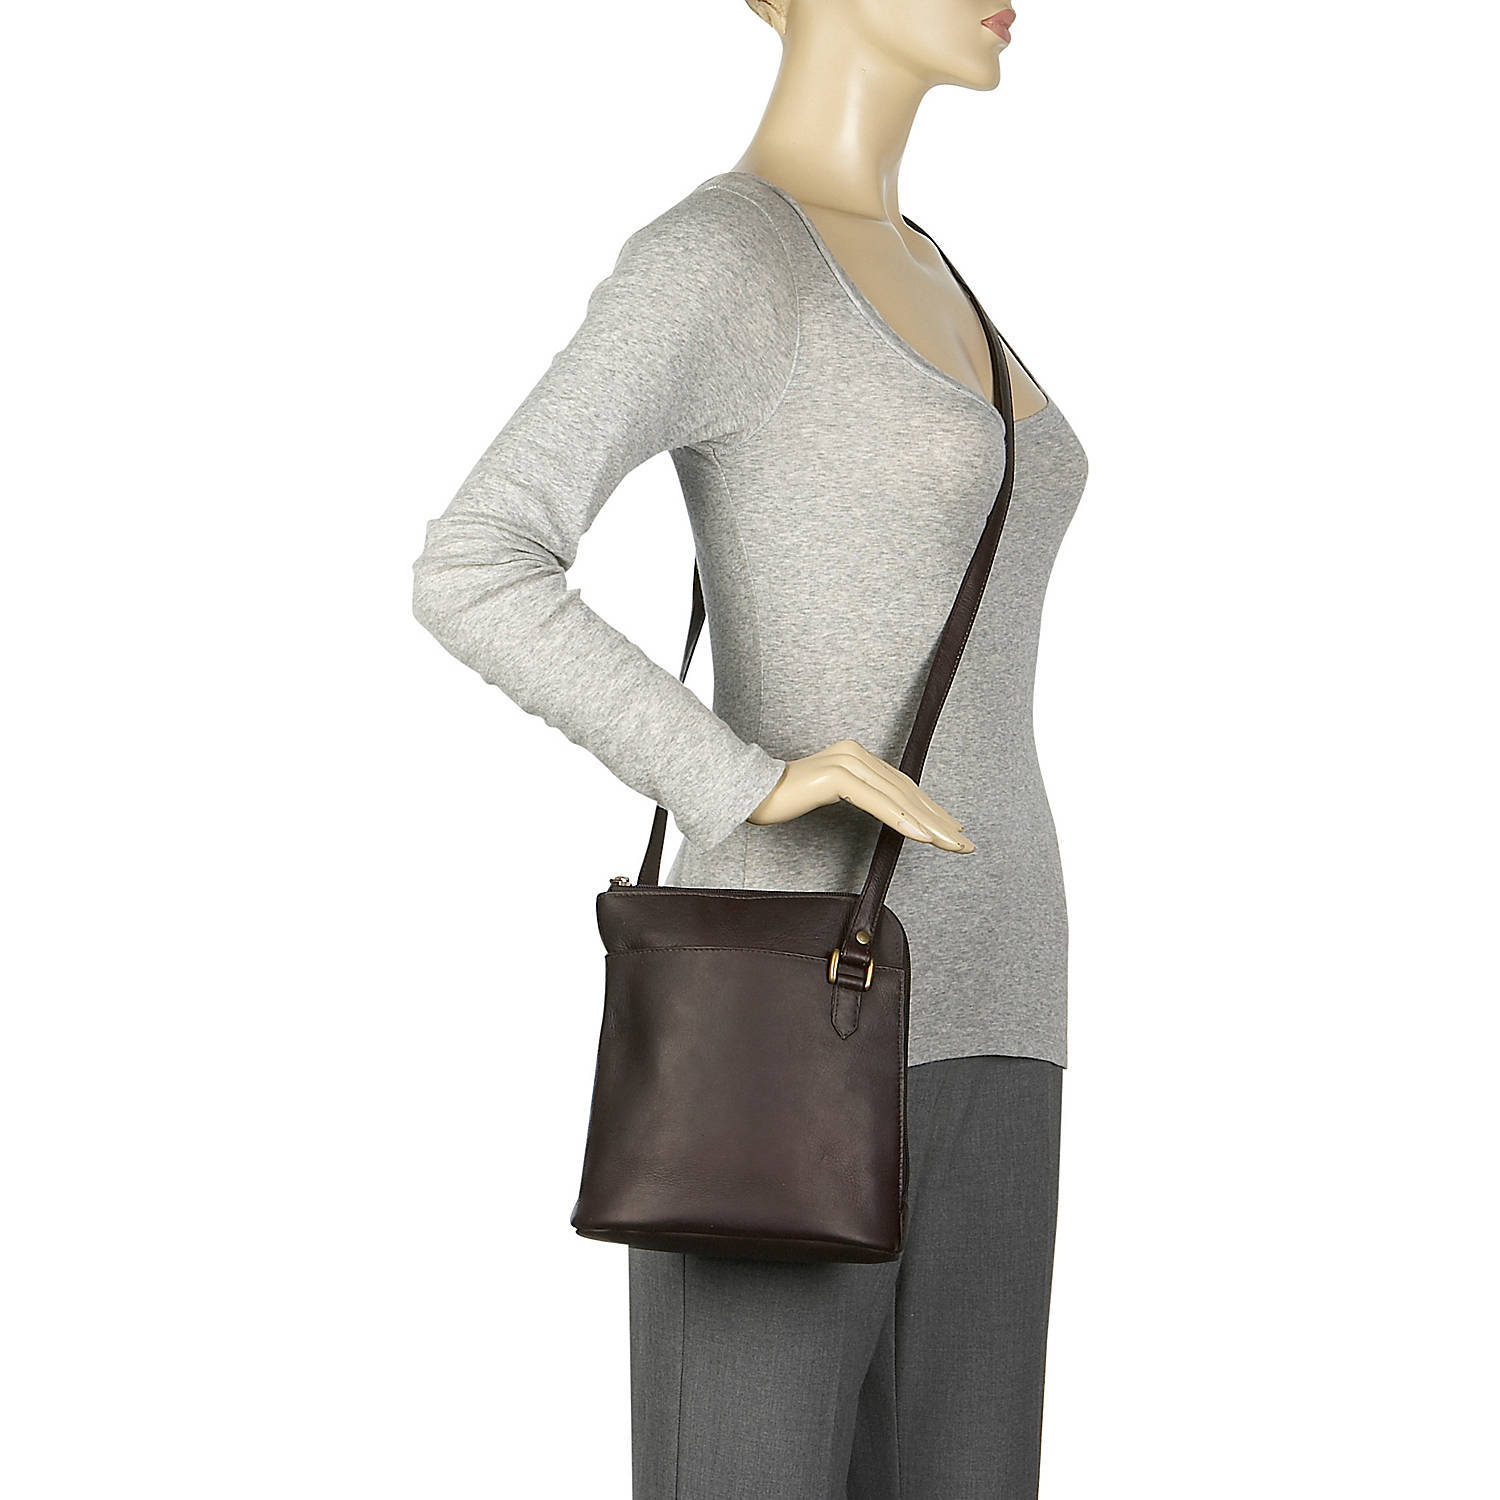 Le Donne Leather L-Zip Crossbody Shoulder Bag LD-808 - image 4 of 4